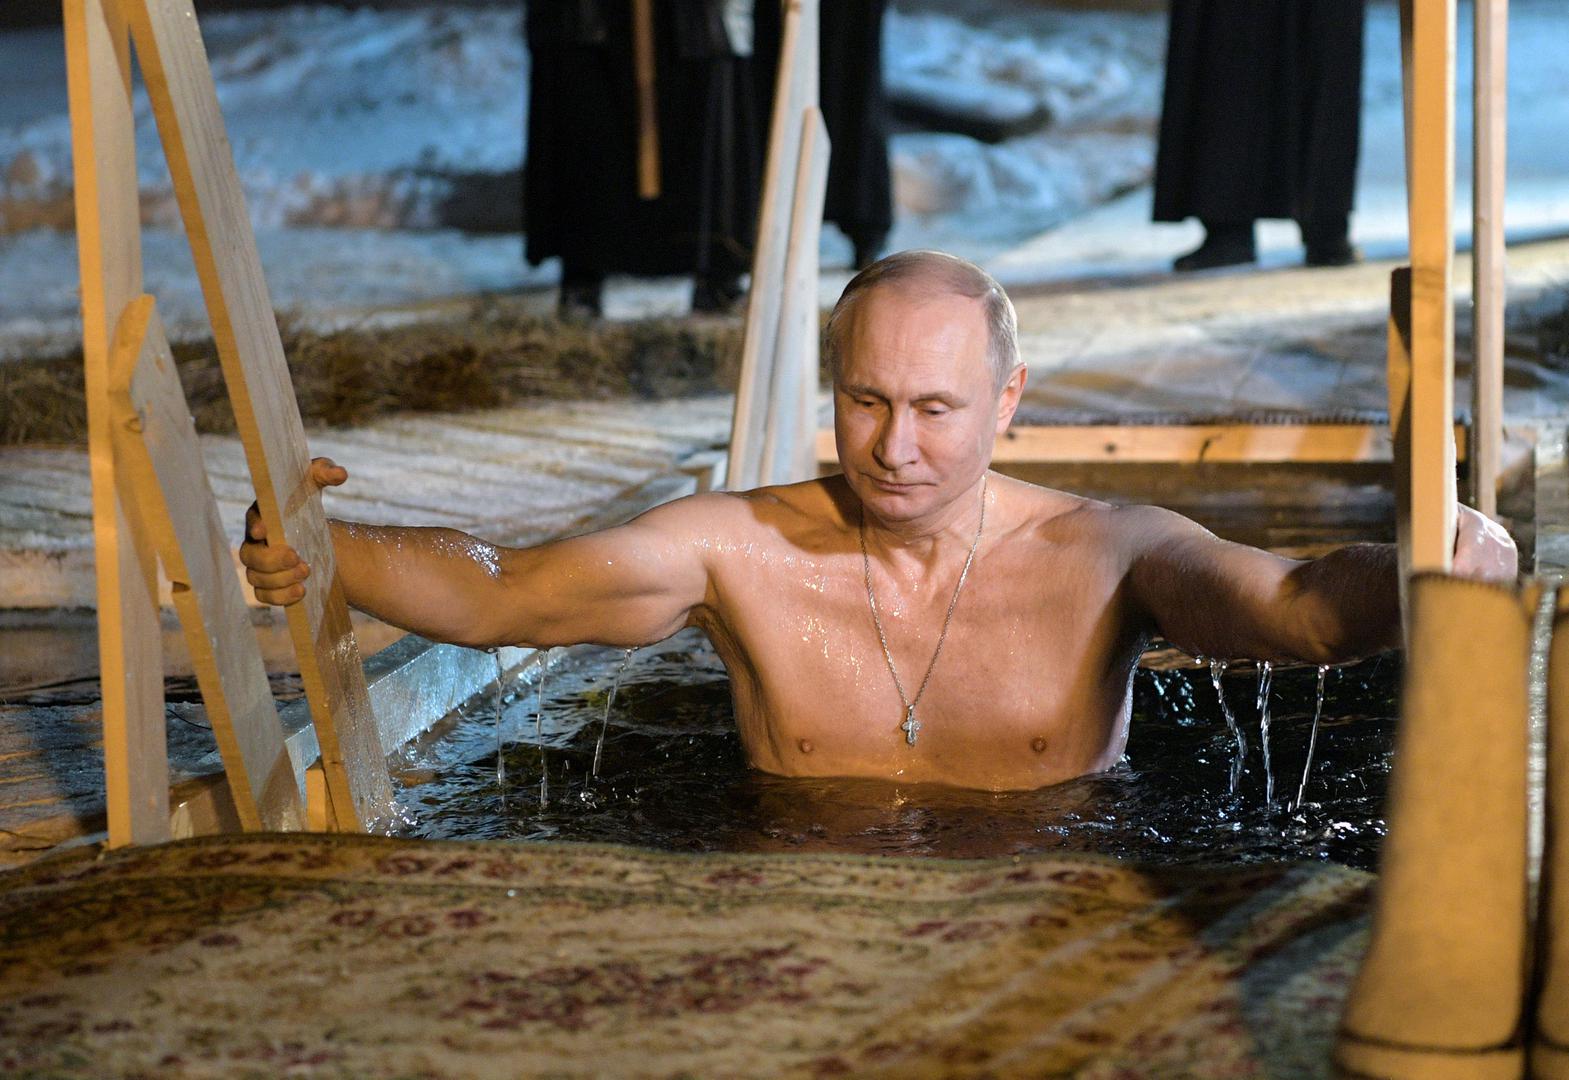 Brojni Rusi, među kojima predsjednik Vladimir Putin, kupali su se u noći s četvrtka na petak u zamrznutim rijekama i jezerima za ledena vremena koje je mjestimično natjeralo vlasti da otkažu u nekim područjima taj ritual kojim se obilježava pravoslavno Bogojavljenje